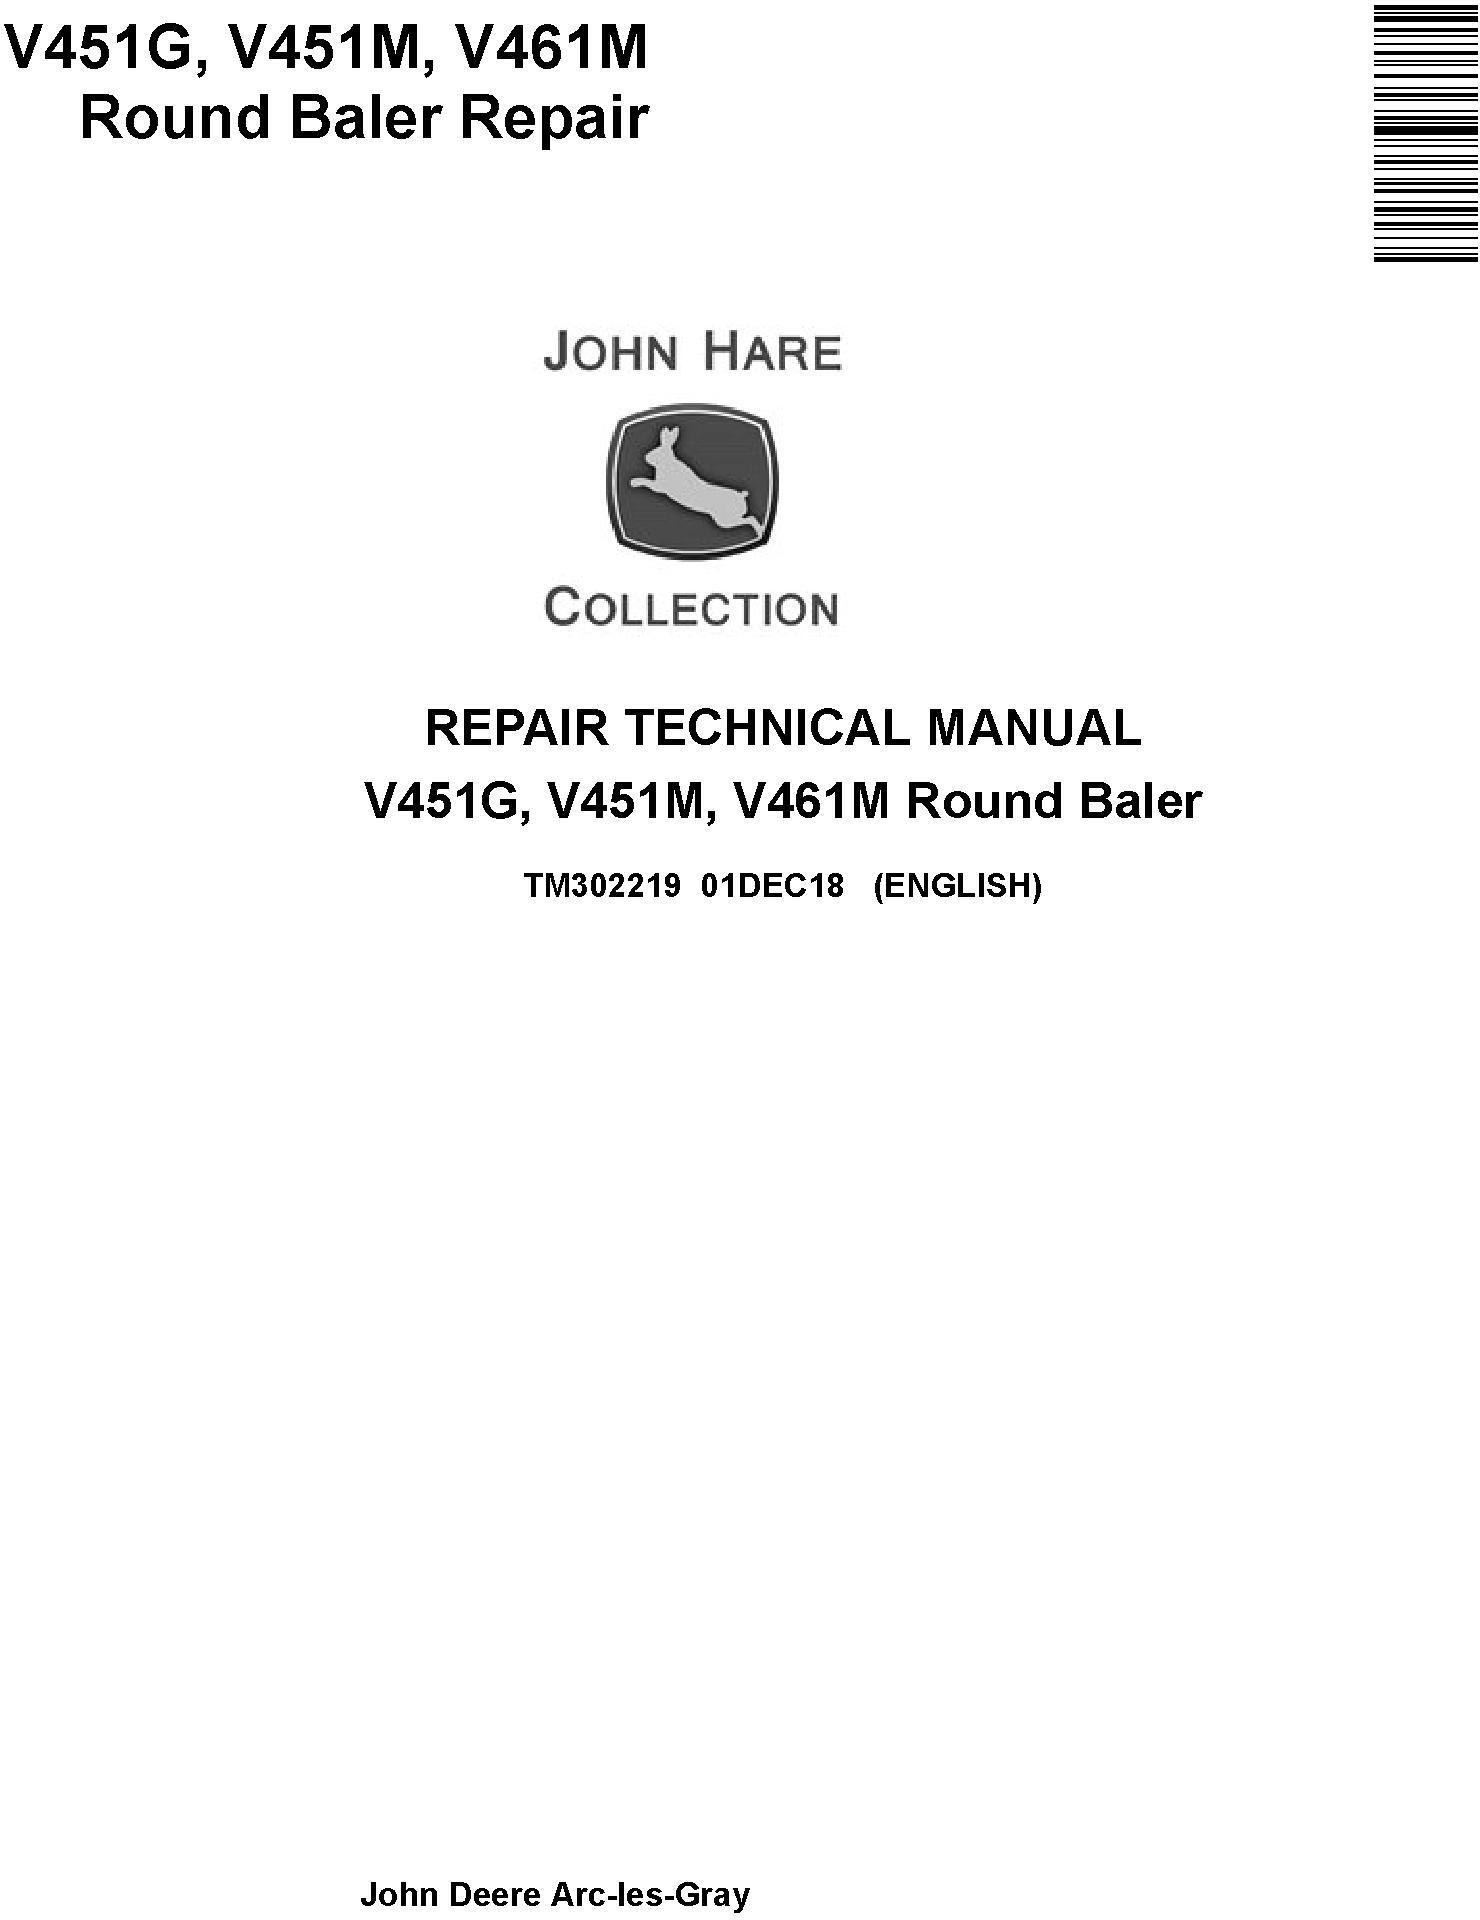 John Deere V451G V451M V461M Round Baler Repair Technical Manual TM302219